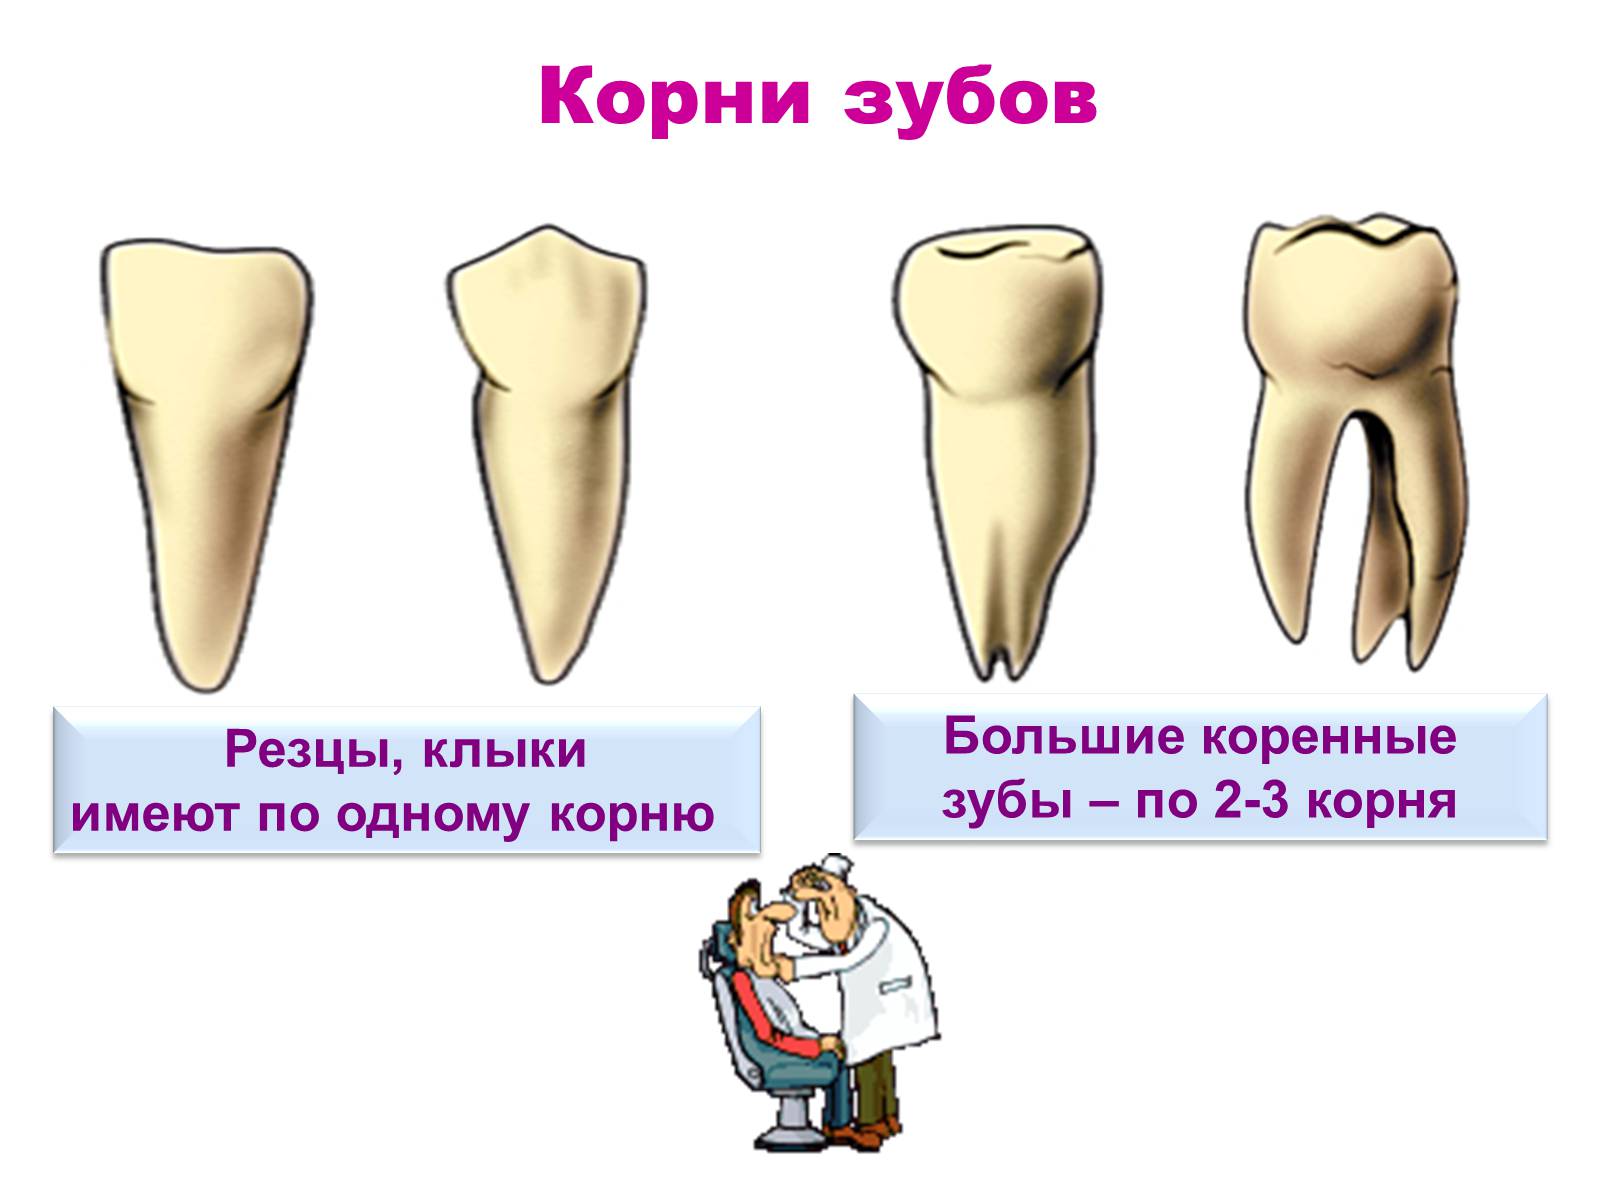 Как отличить зубы. Коренные зубы, резцы, резцы клыки. Строение молочного зуба резца. Большой корень коренного зуба.